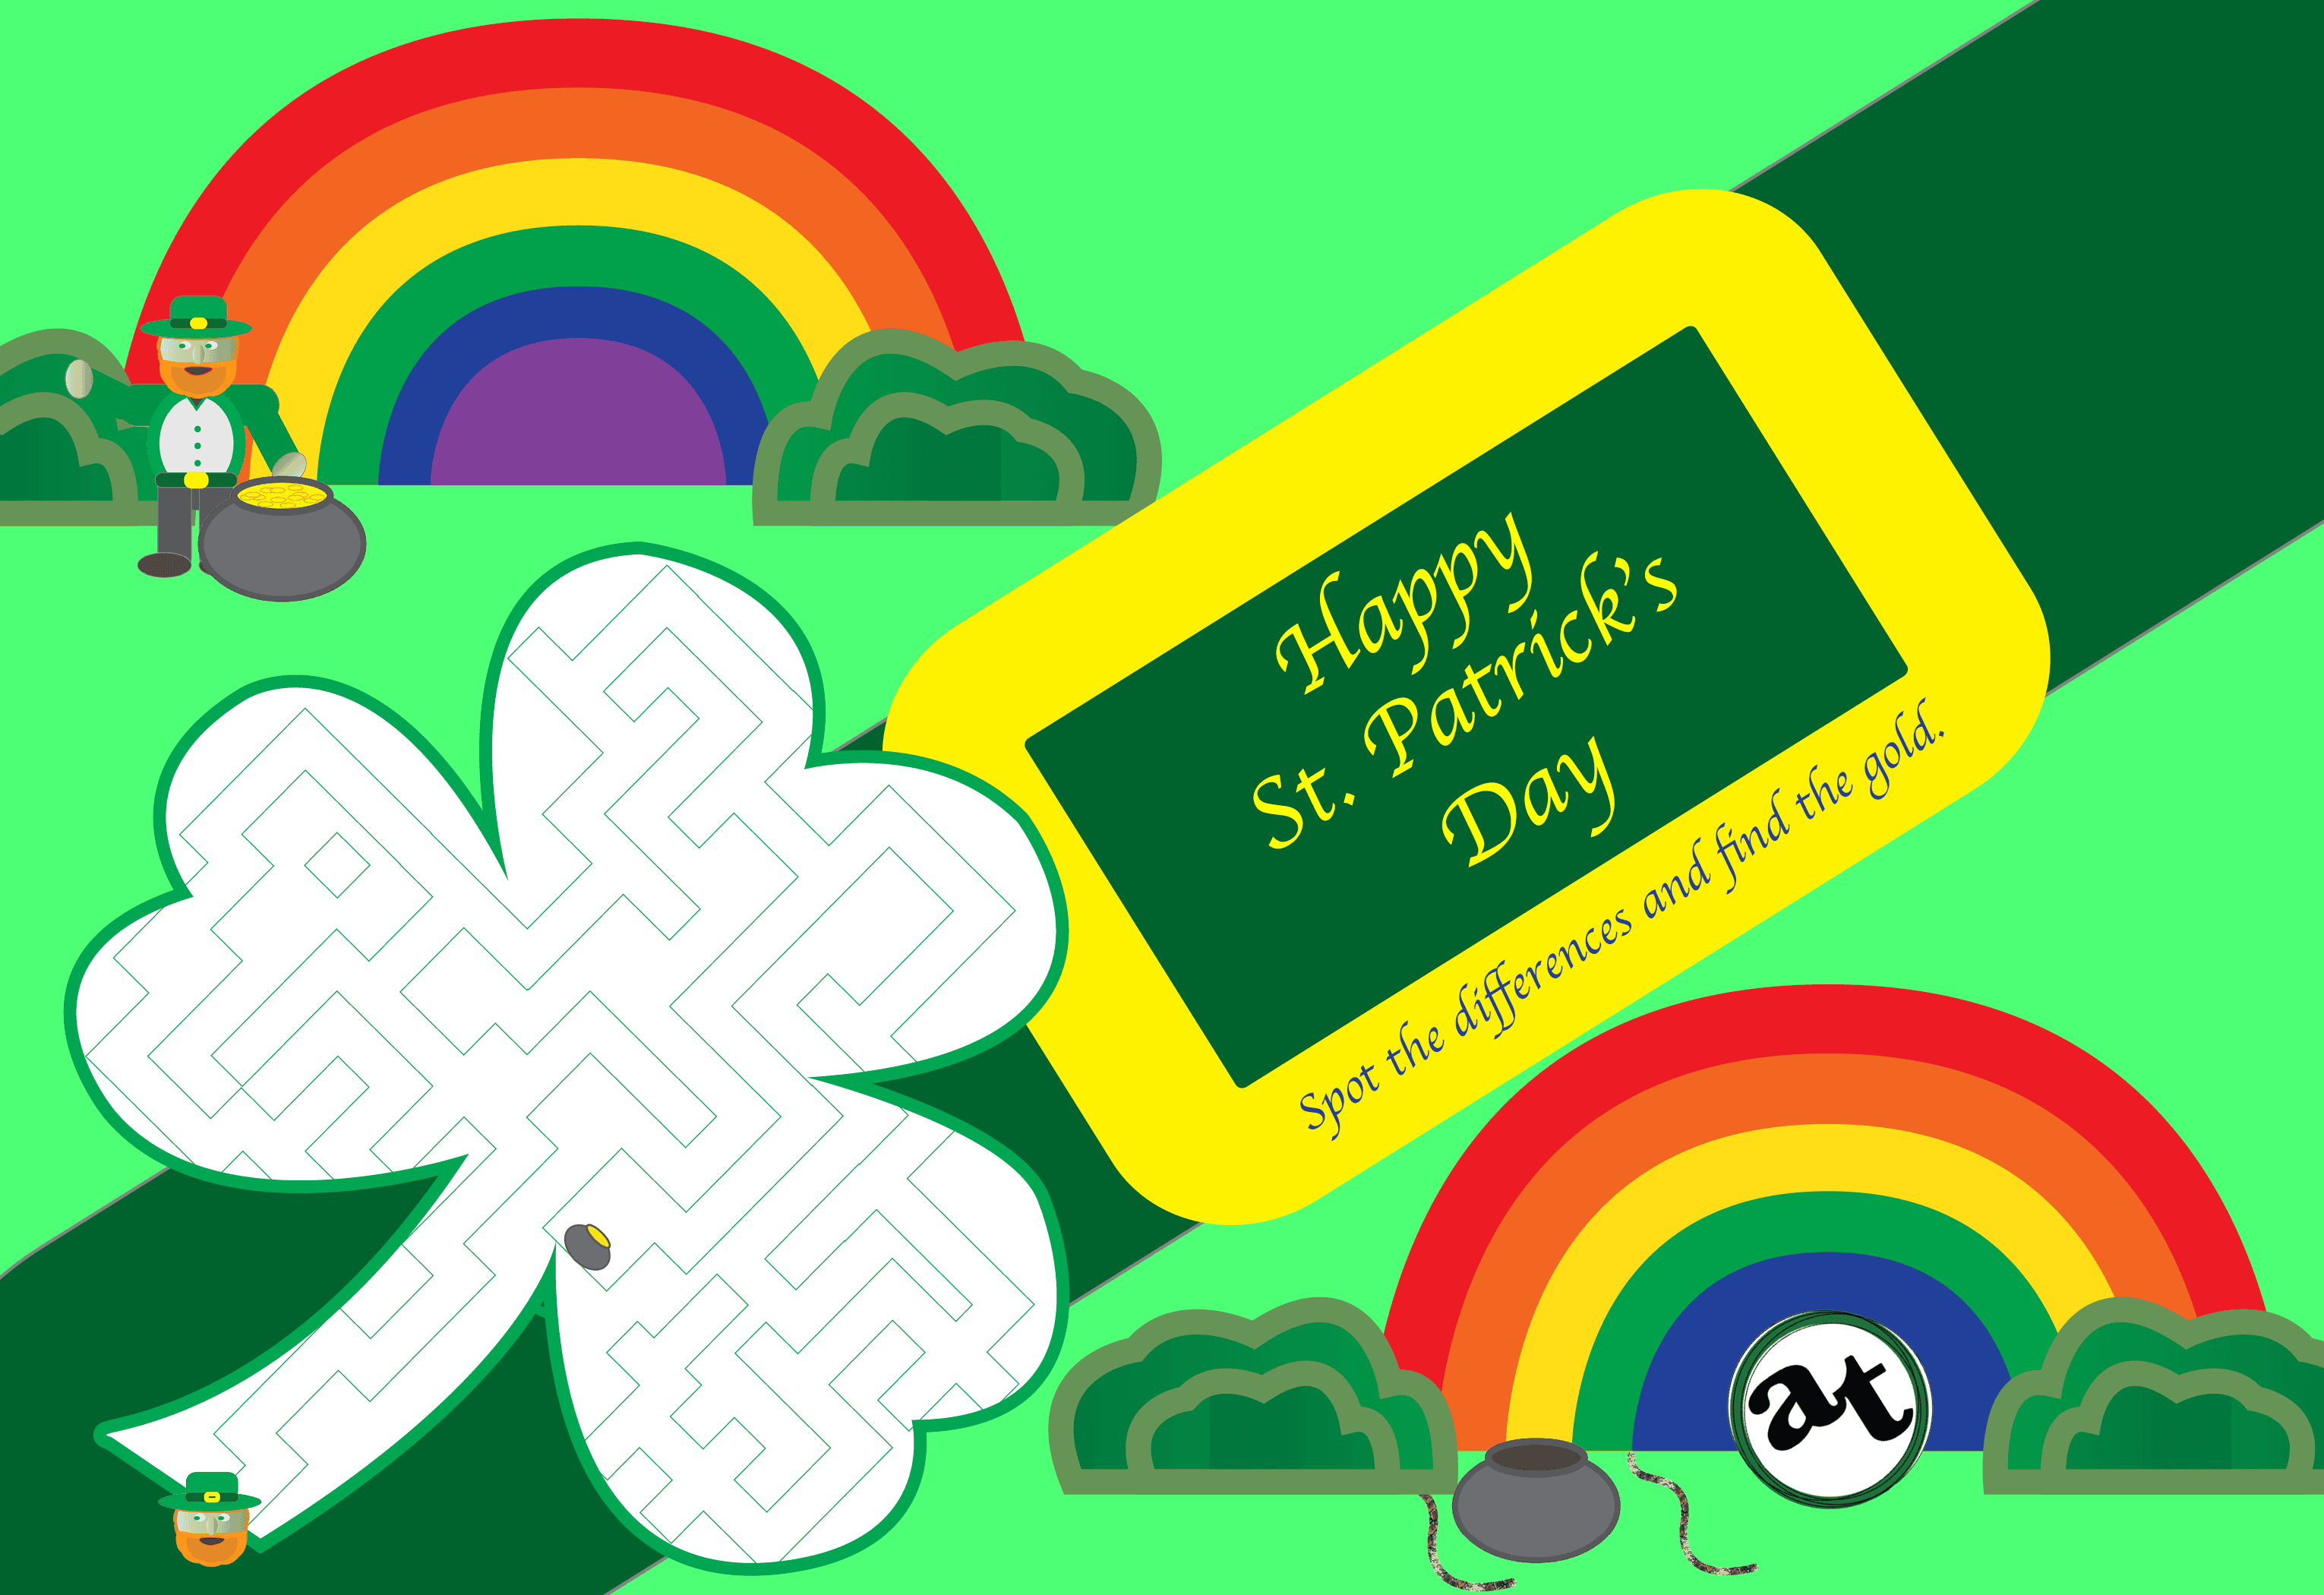 Happy St. Patrick’s Day